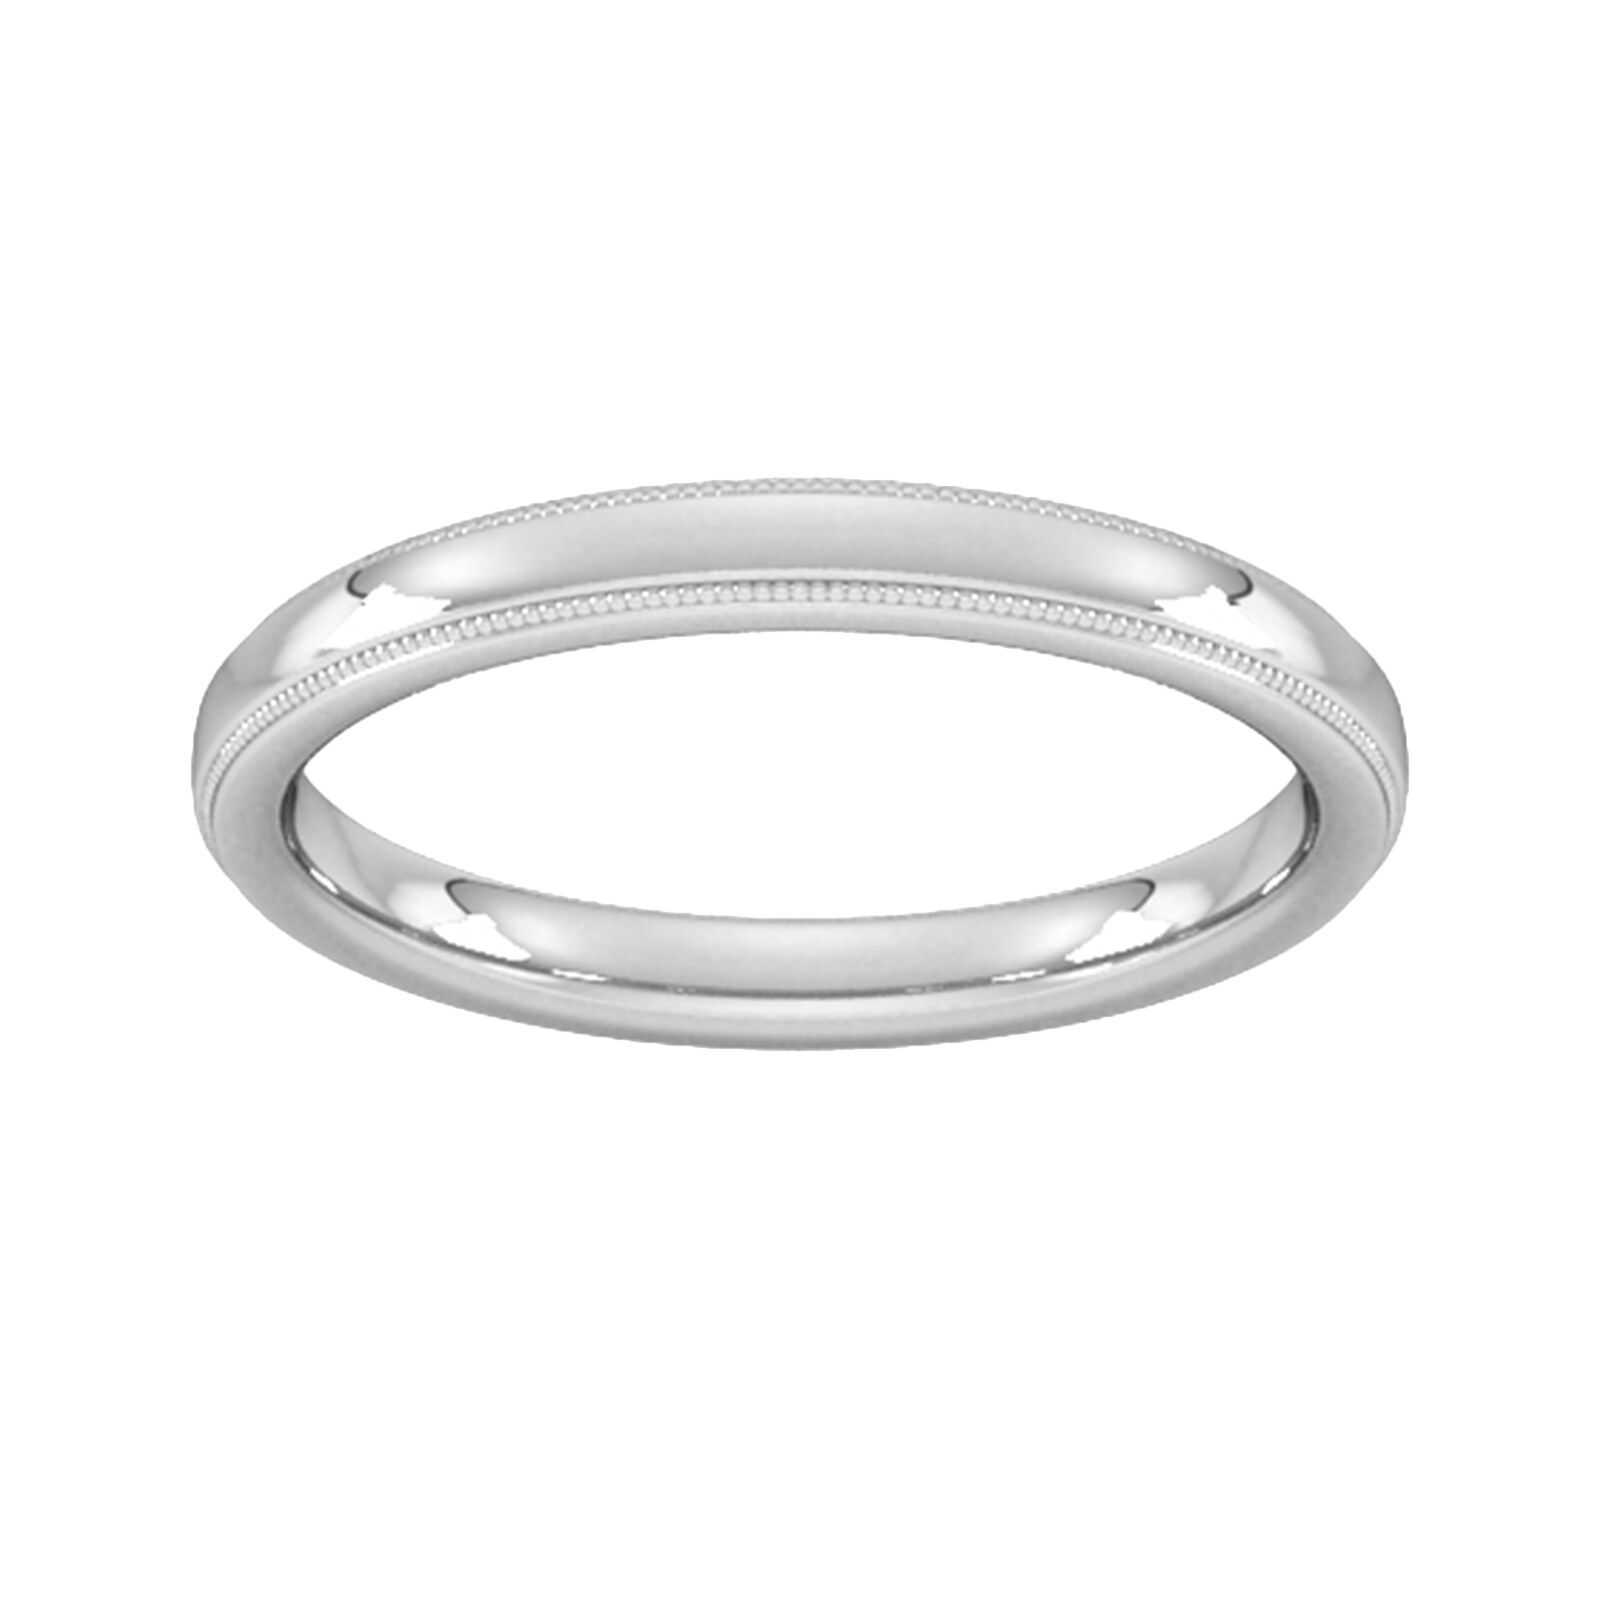 2.5mm Slight Court Extra Heavy Milgrain Edge Wedding Ring In 9 Carat White Gold - Ring Size G